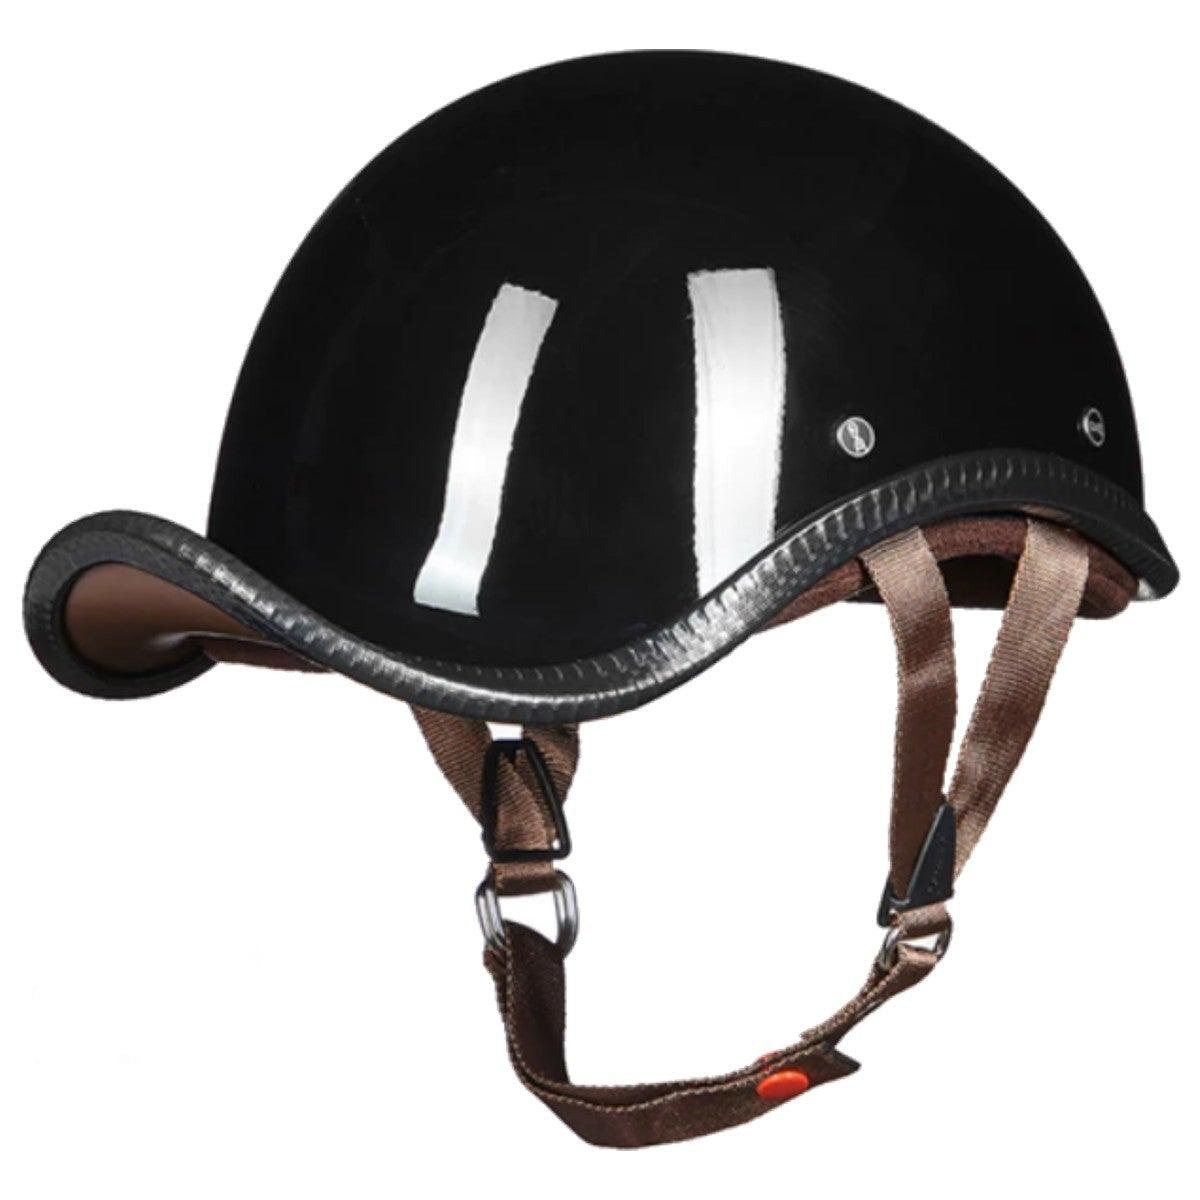 Retro Vintage German Motorcycle Helmet, Gloss Black